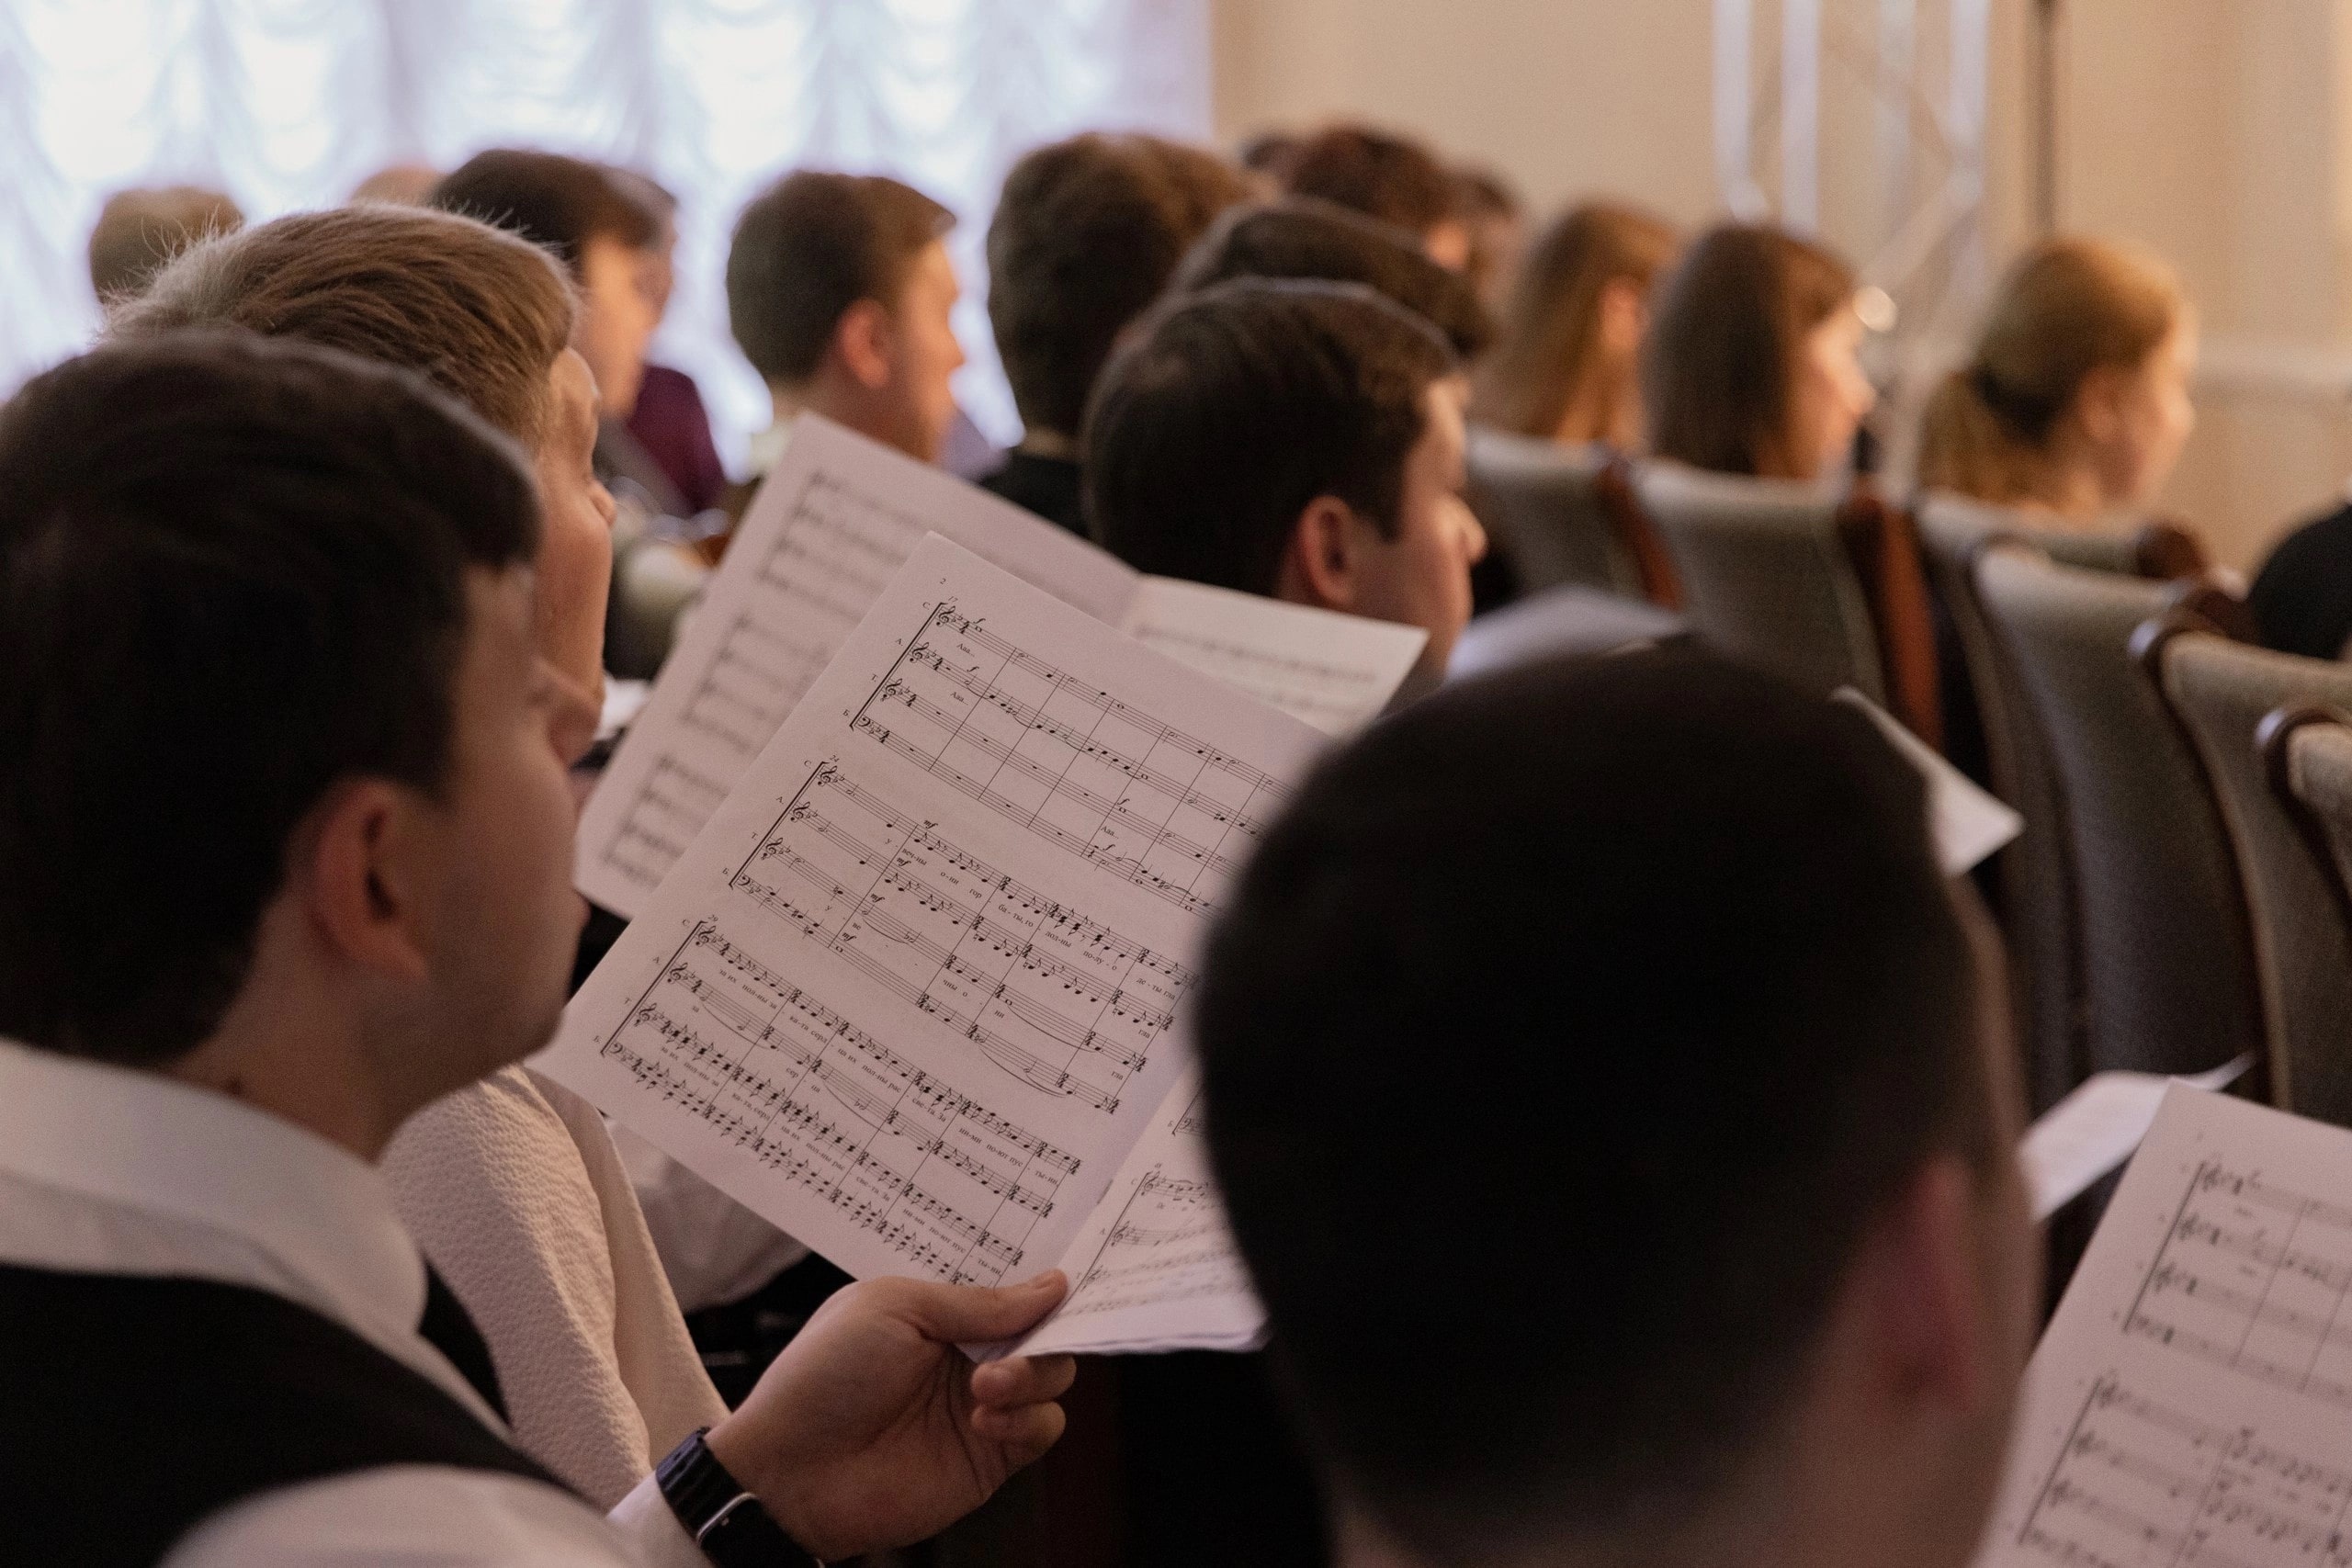 9 молодых композиторов напишут новую музыку для ансамбля Intrada